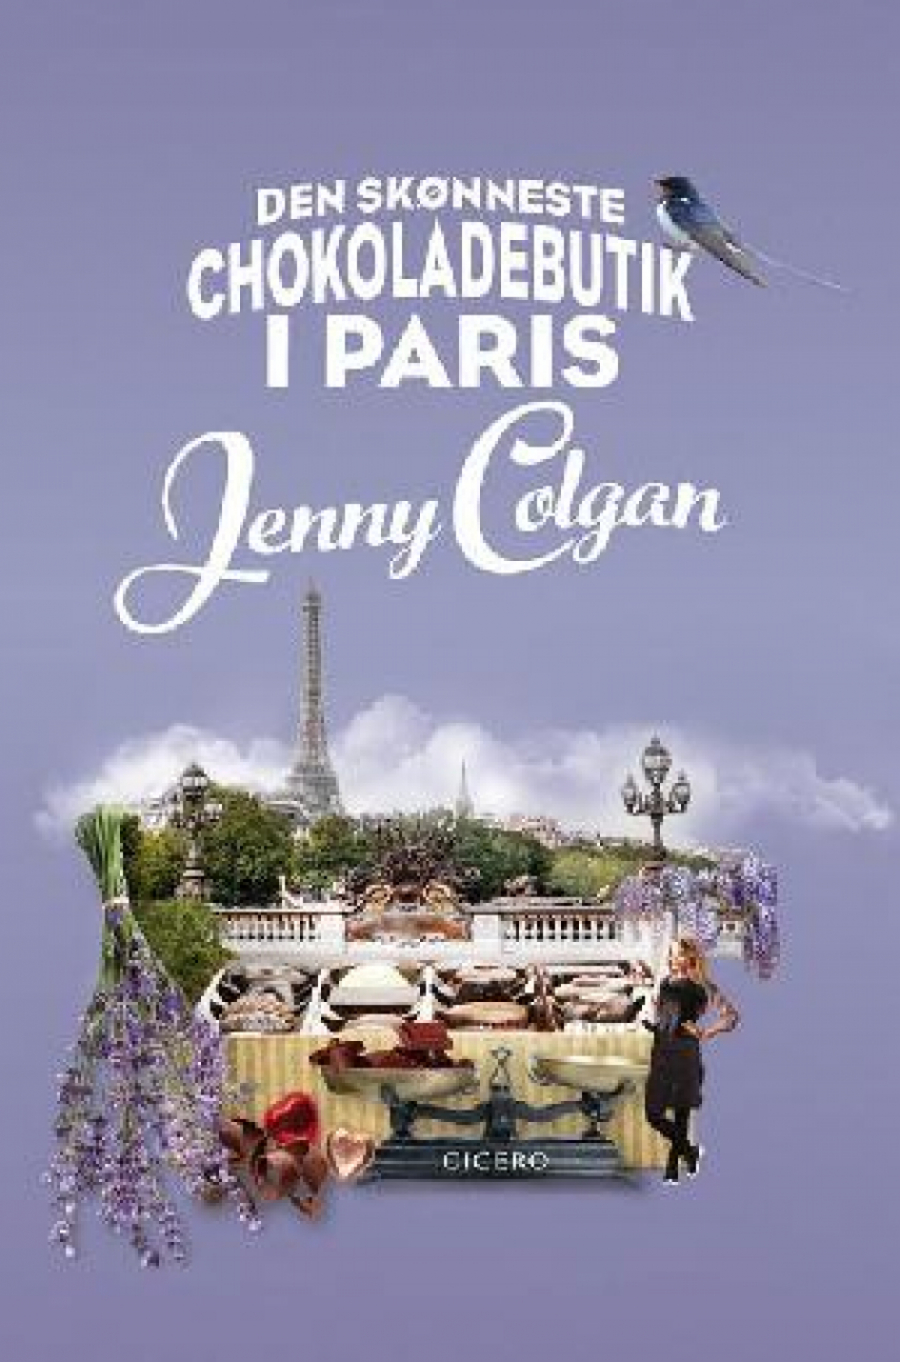 Forsiden af Den skønneste chokoladebutik i Paris